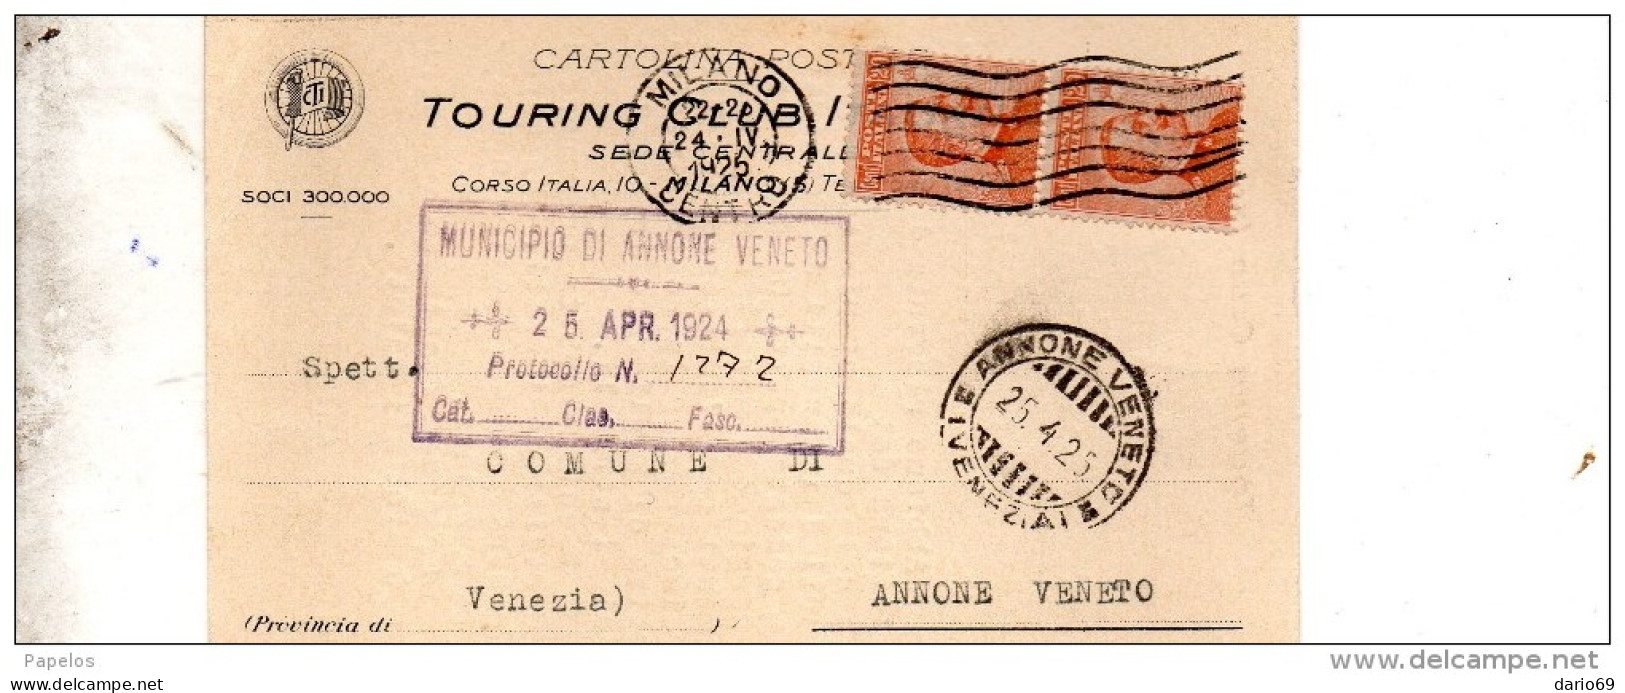 1925 CARTOLINA INTESTATA TOURING CLUB CON ANNULLO MILANO + ANNONE VENETO VENEZIA - Marcophilia